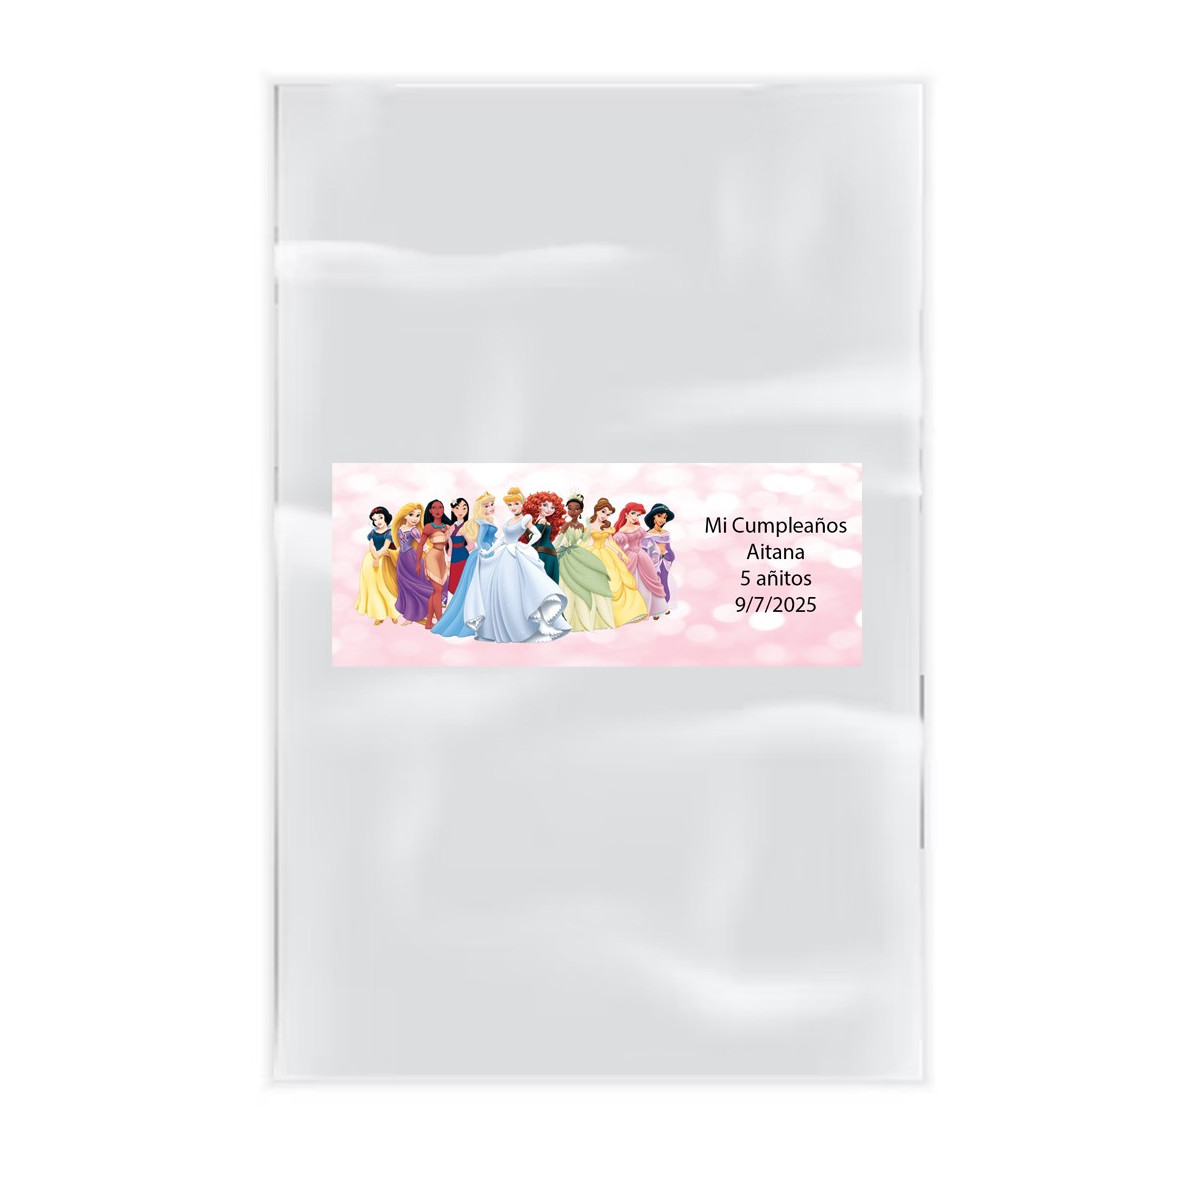 Pack 20 saquinhos transparentes com adesivo personalizado com texto e nome princesas disney